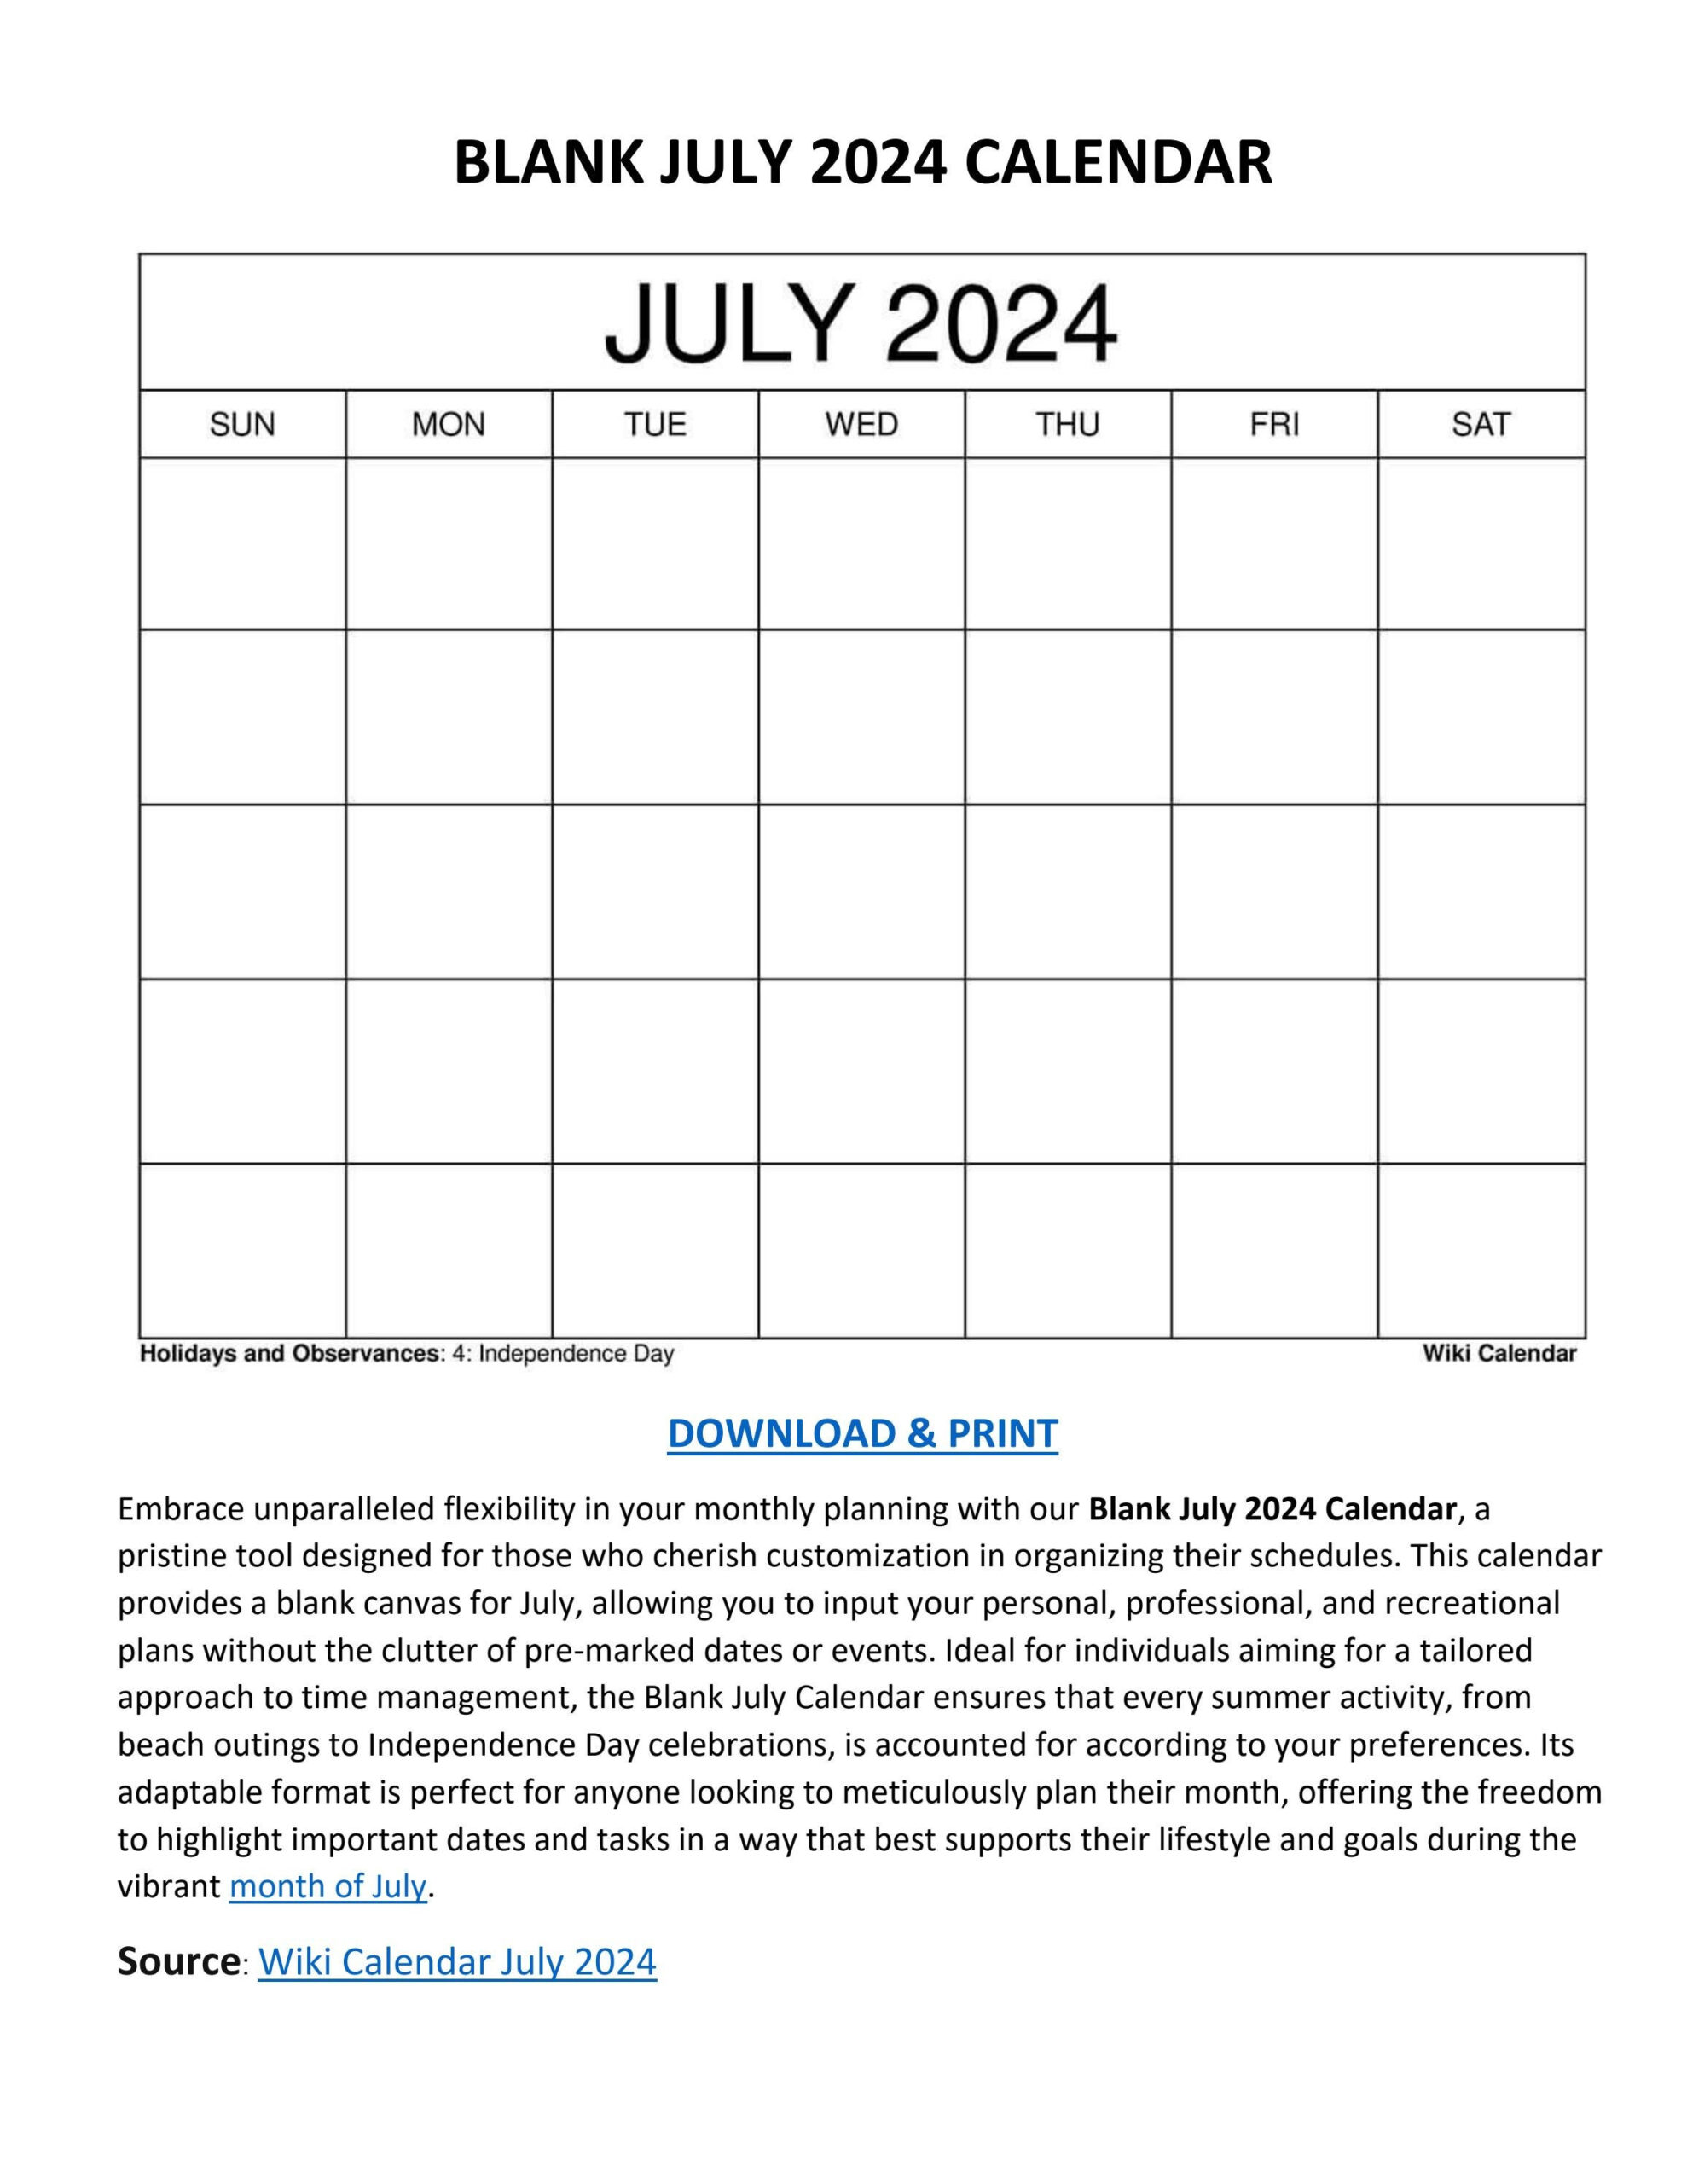 Blank July 2024 Calendar - Wiki Calendarwiki Calendar - Issuu with regard to Wiki Calendar July 2024